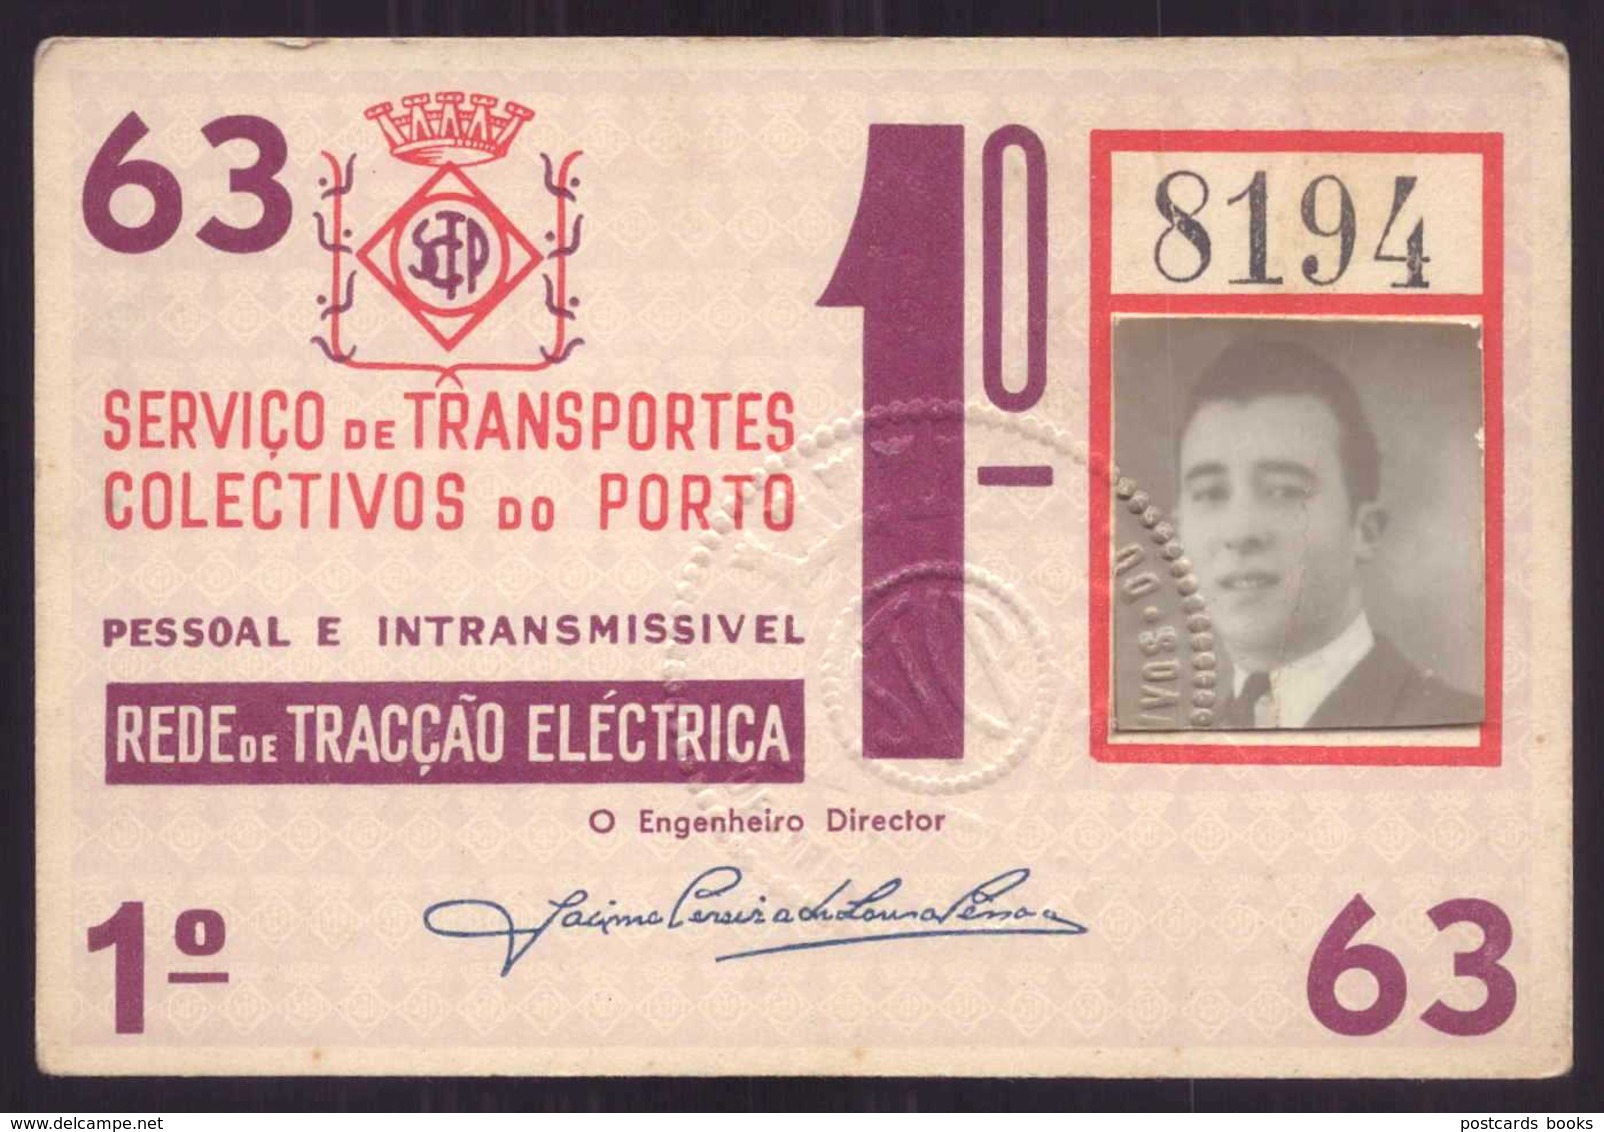 1963 Passe STCP SERVIÇO TRANSPORTES COLECTIVOS Do PORTO Rede De Tracção Electrica 1963. Pass Ticket TRAM Portugal - Europa